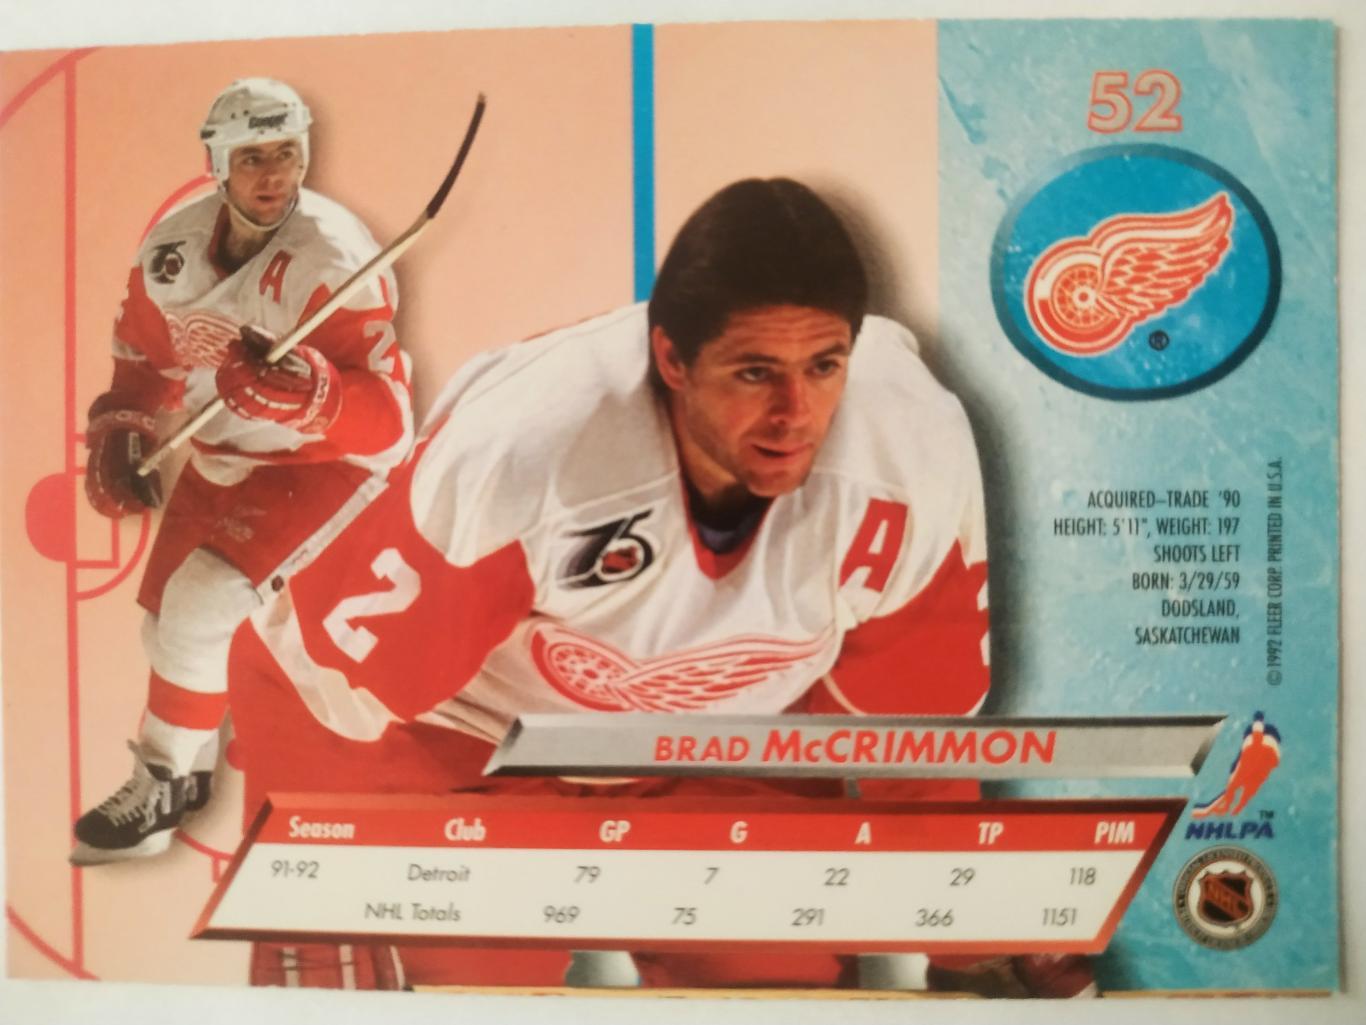 ХОККЕЙ КАРТОЧКА НХЛ FLEER ULTRA 1992-93 NHL BRAD MCCRIMMON DETROIT RED WINGS #52 1